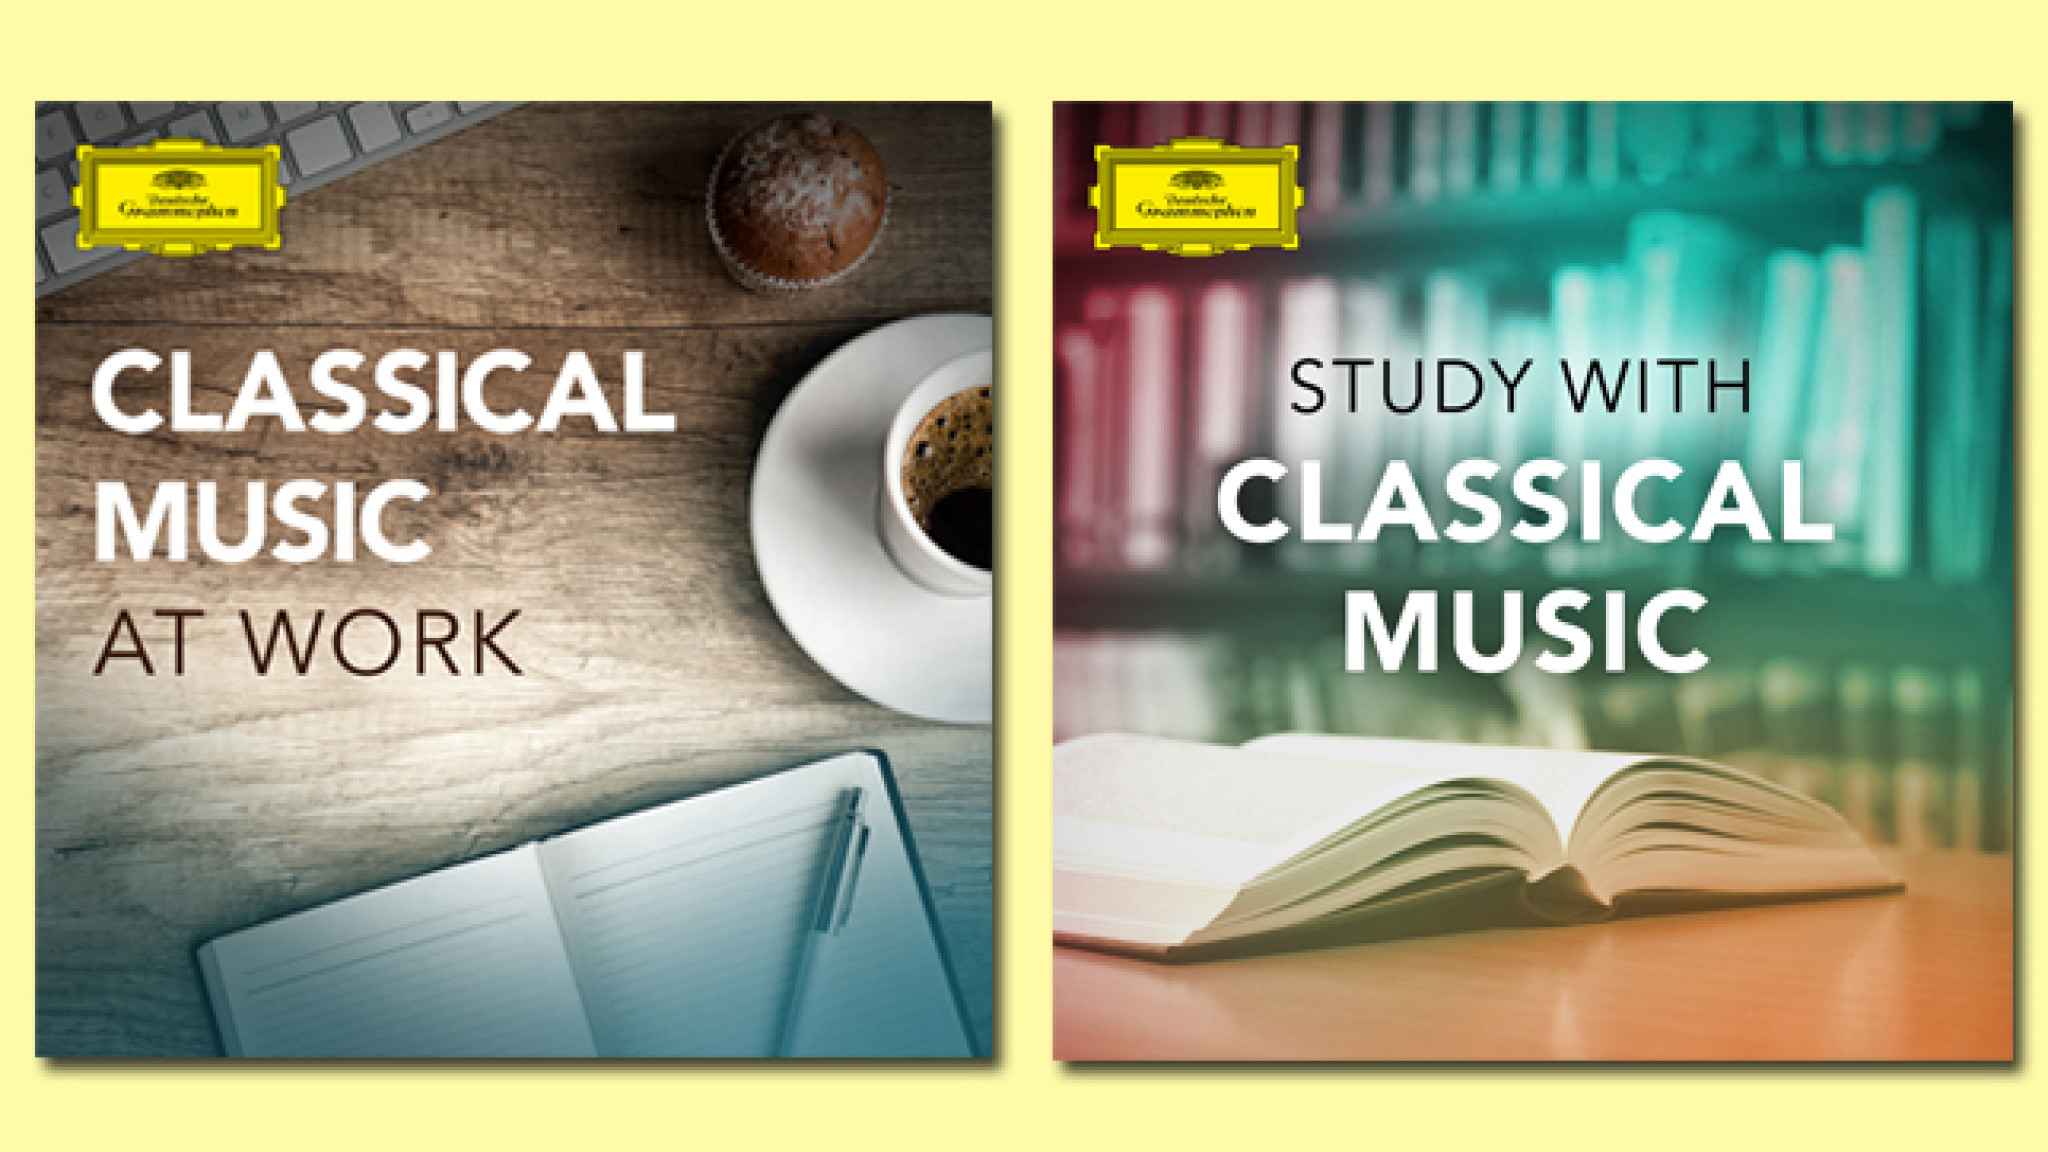 Deutsche Grammophon Spotify-Playlists mit klassischer Musik zum Arbeiten und Studieren